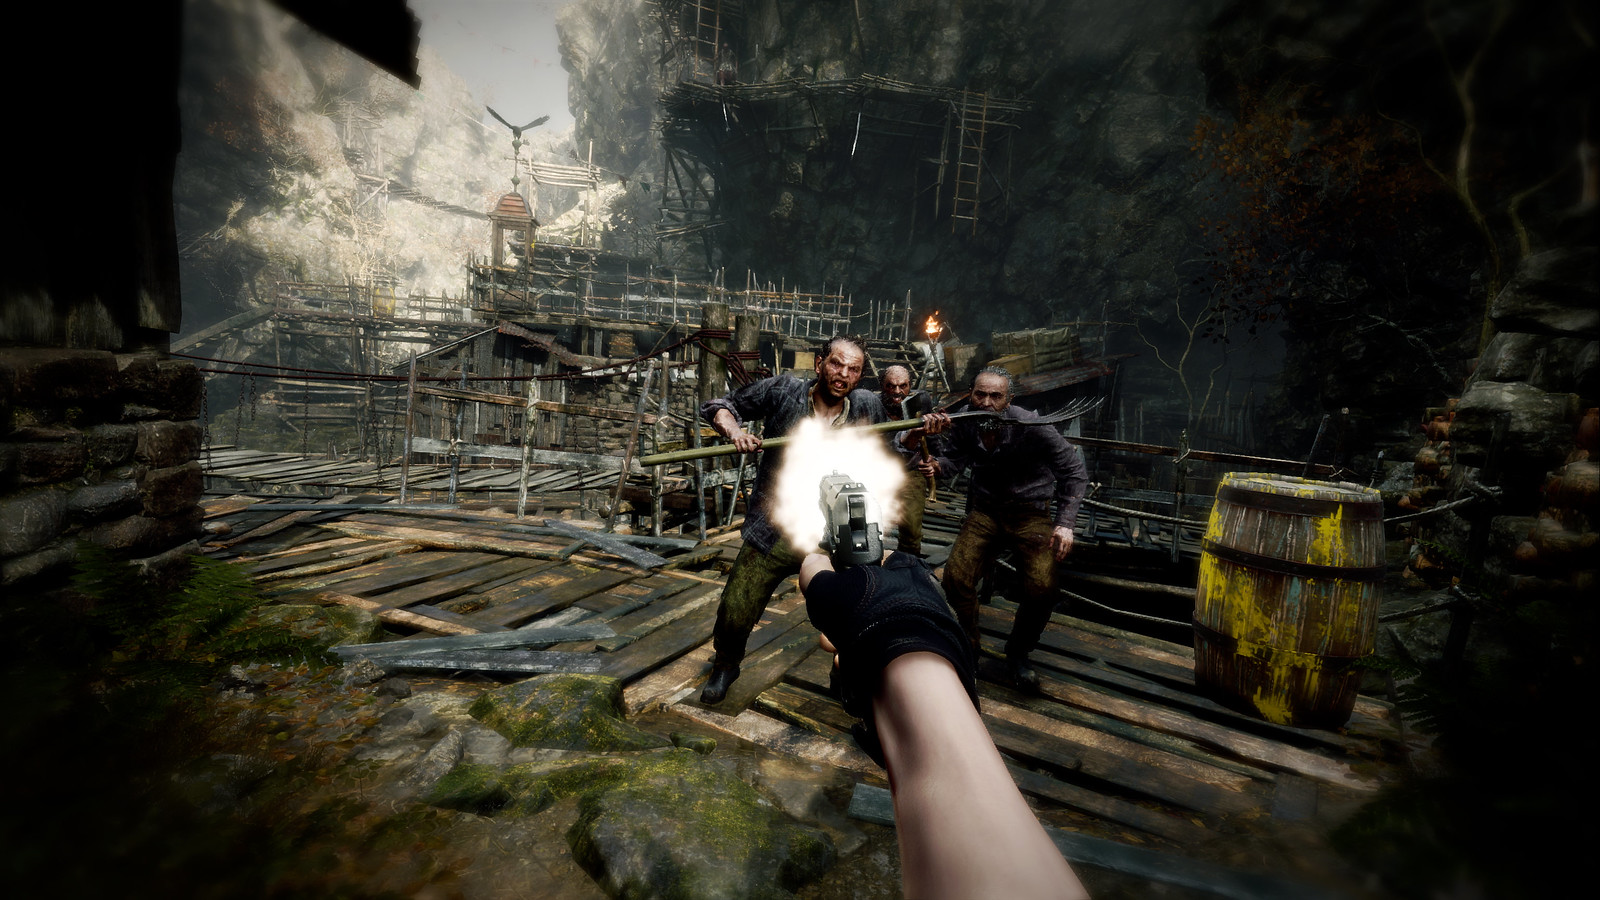 En primera persona, el jugador levanta y dispara su arma hacia los enemigos que se acercan.